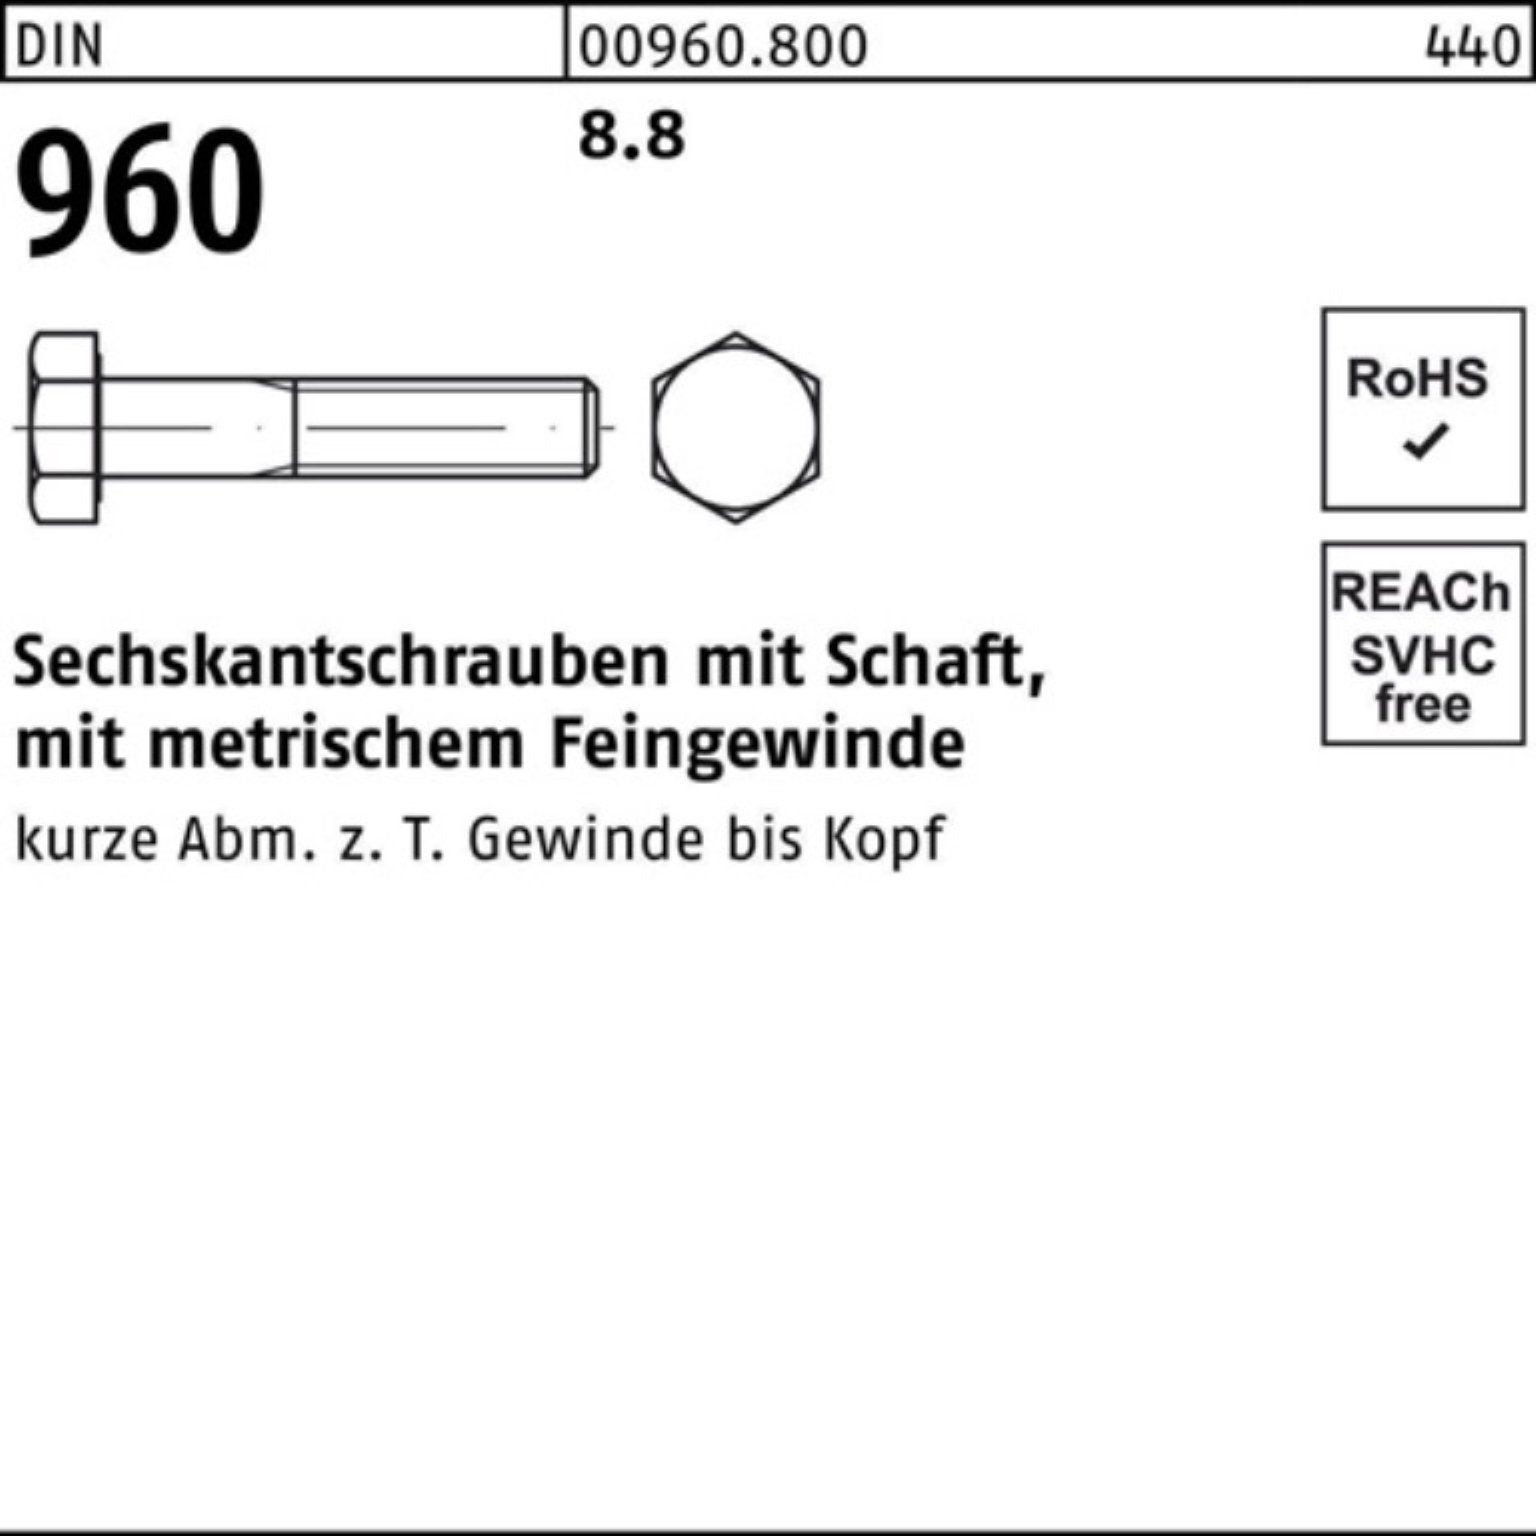 100 Sechskantschraube DIN Sechskantschraube Schaft Stüc Reyher 8.8 960 Pack M10x1,25x100 100er